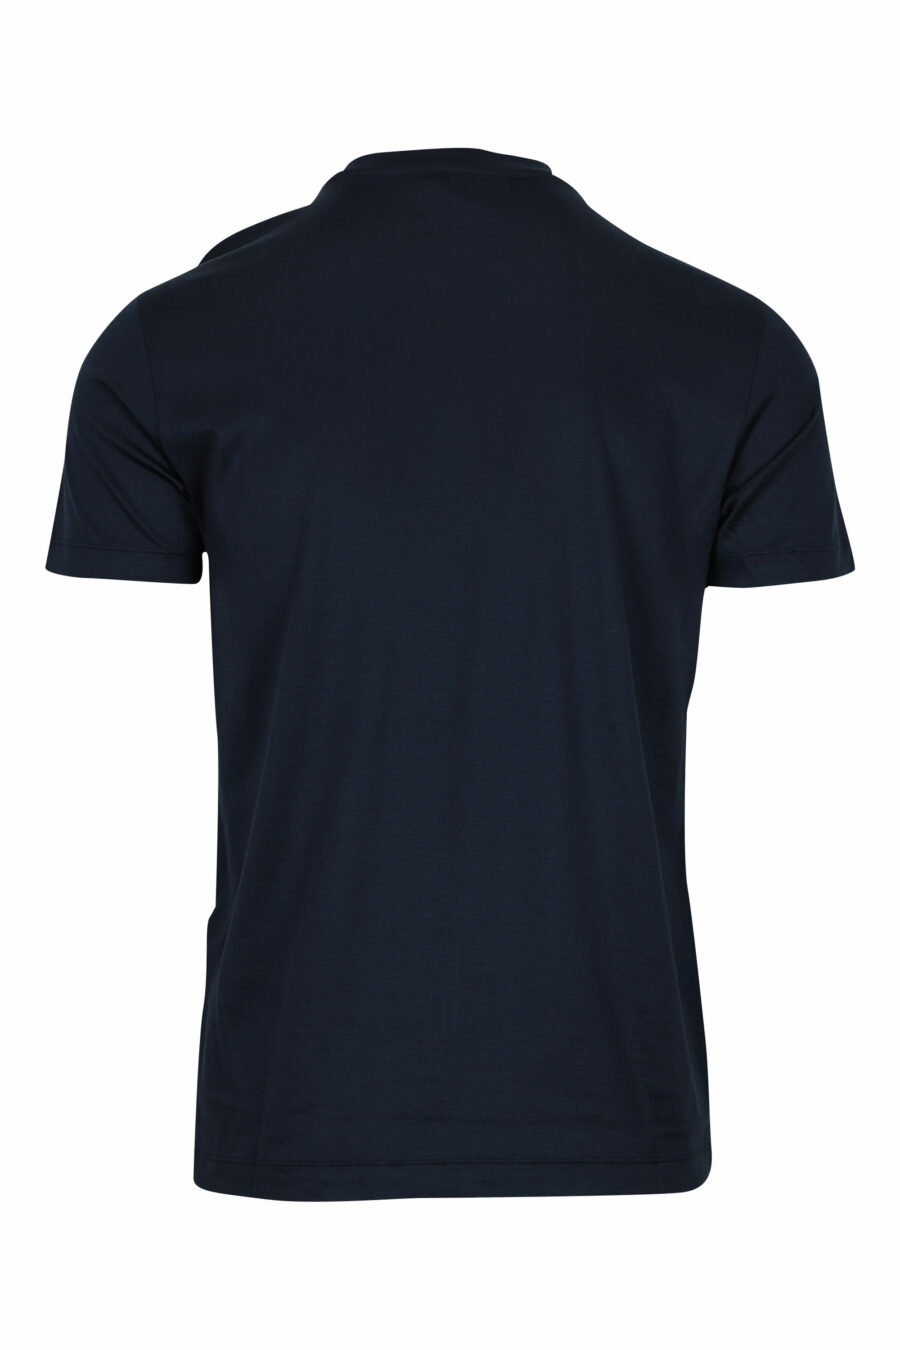 T-shirt azul escura com minilogo "emporio" - 8059516408352